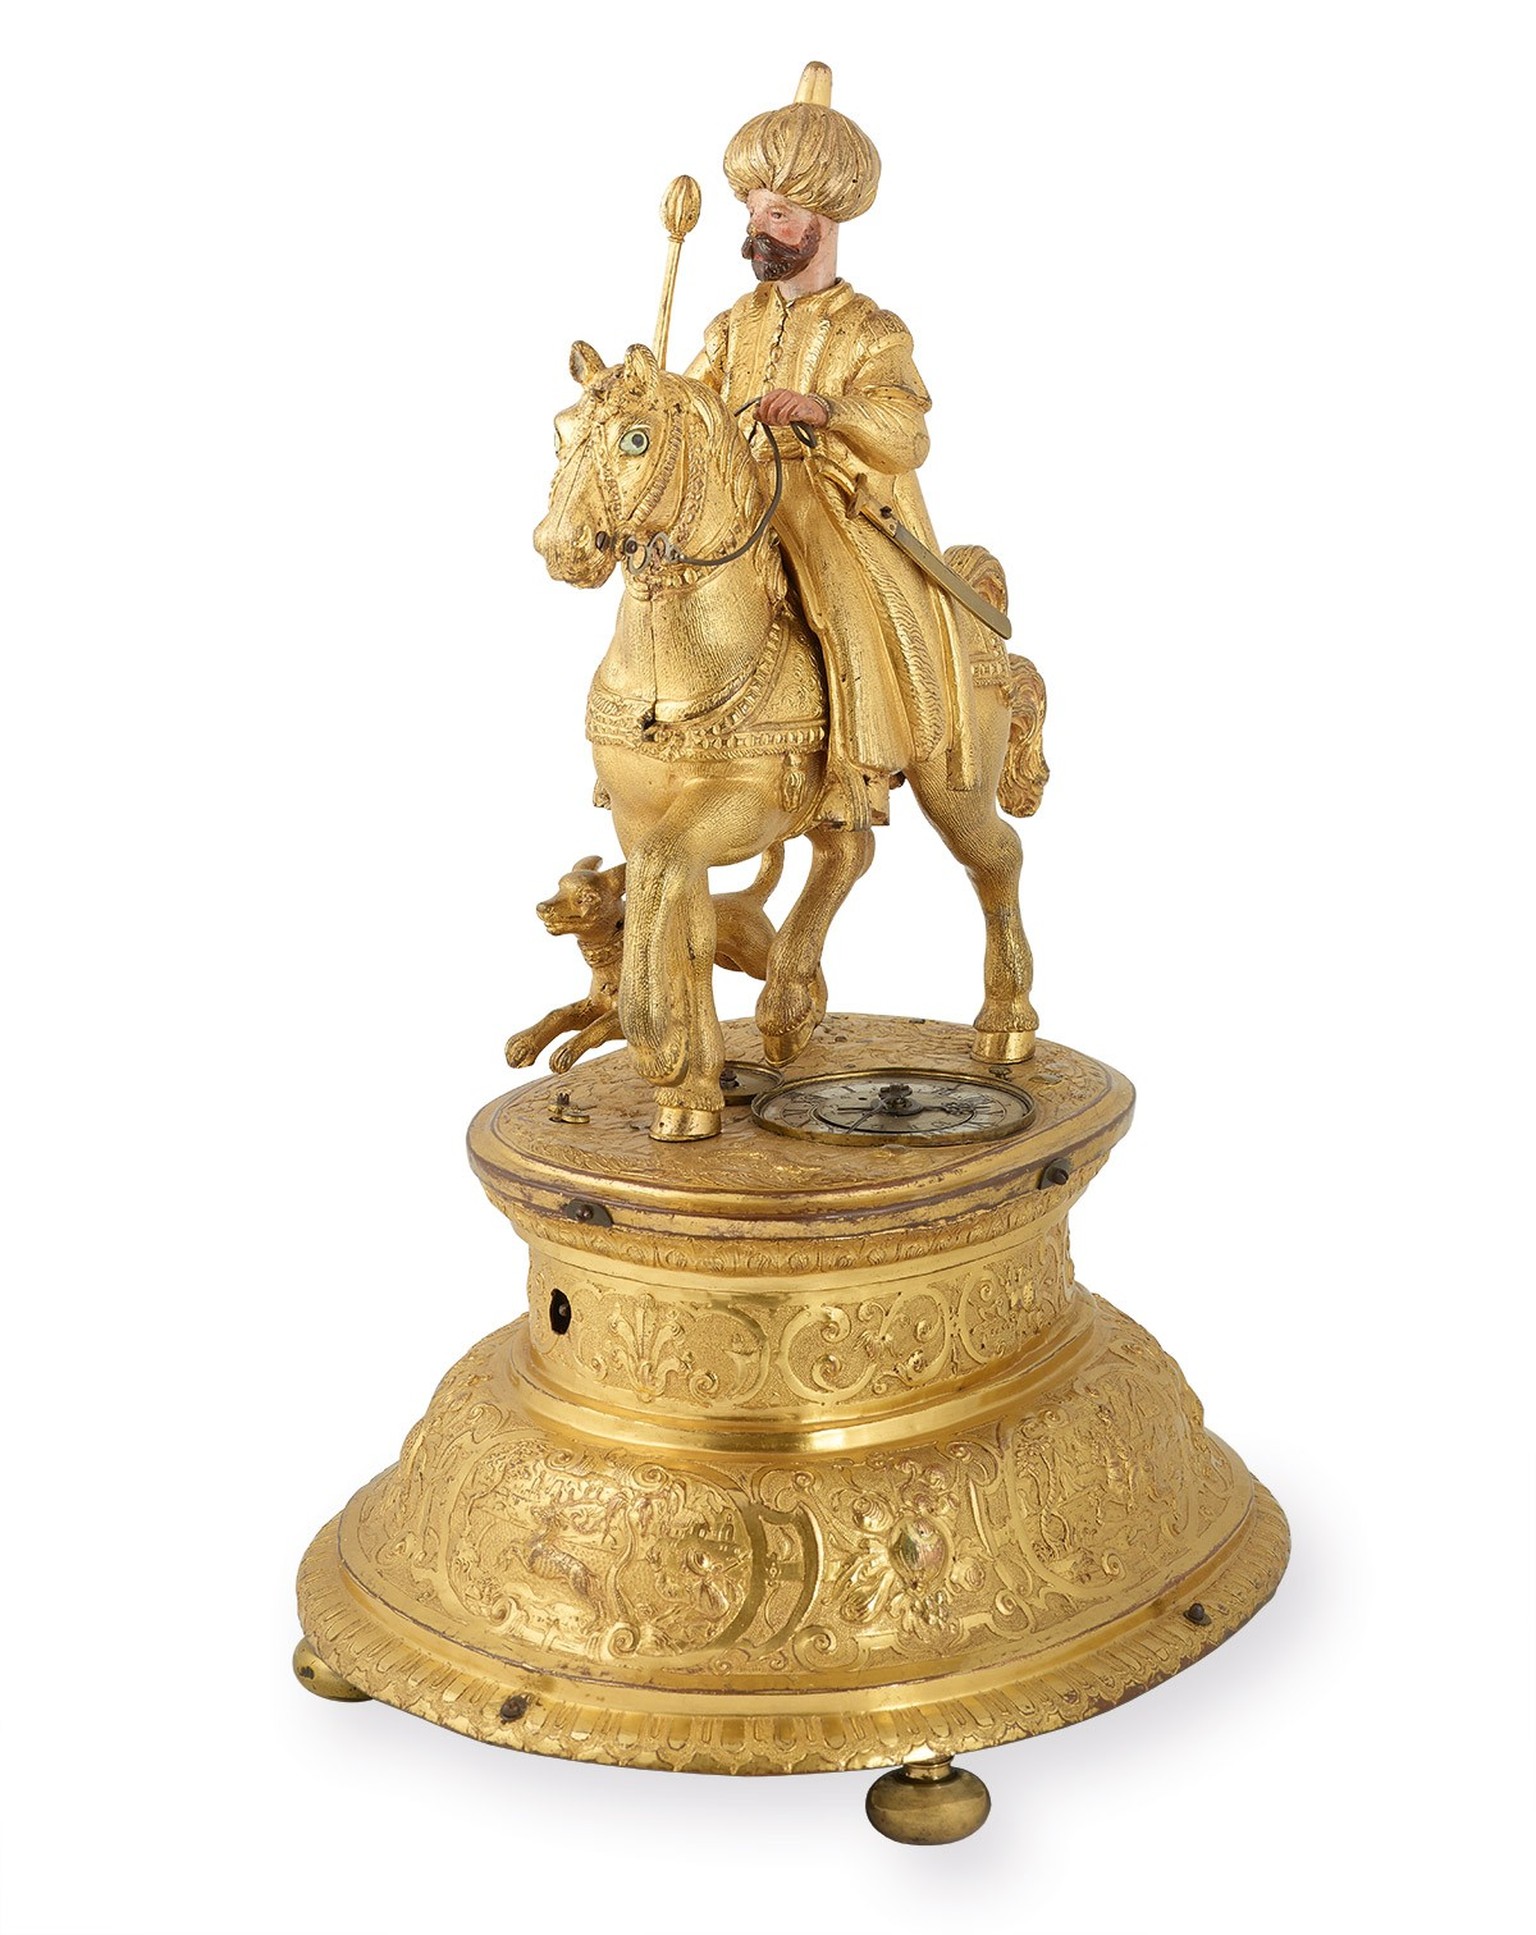 Les horloges fabriquées par Johann Rudolf Stadler n’ont pas été conservées. L’horloge à automates ornée d’un cavalier ottoman, réalisée à Augsbourg vers 1580 et conservée au Musée historique de Bâle,  ...